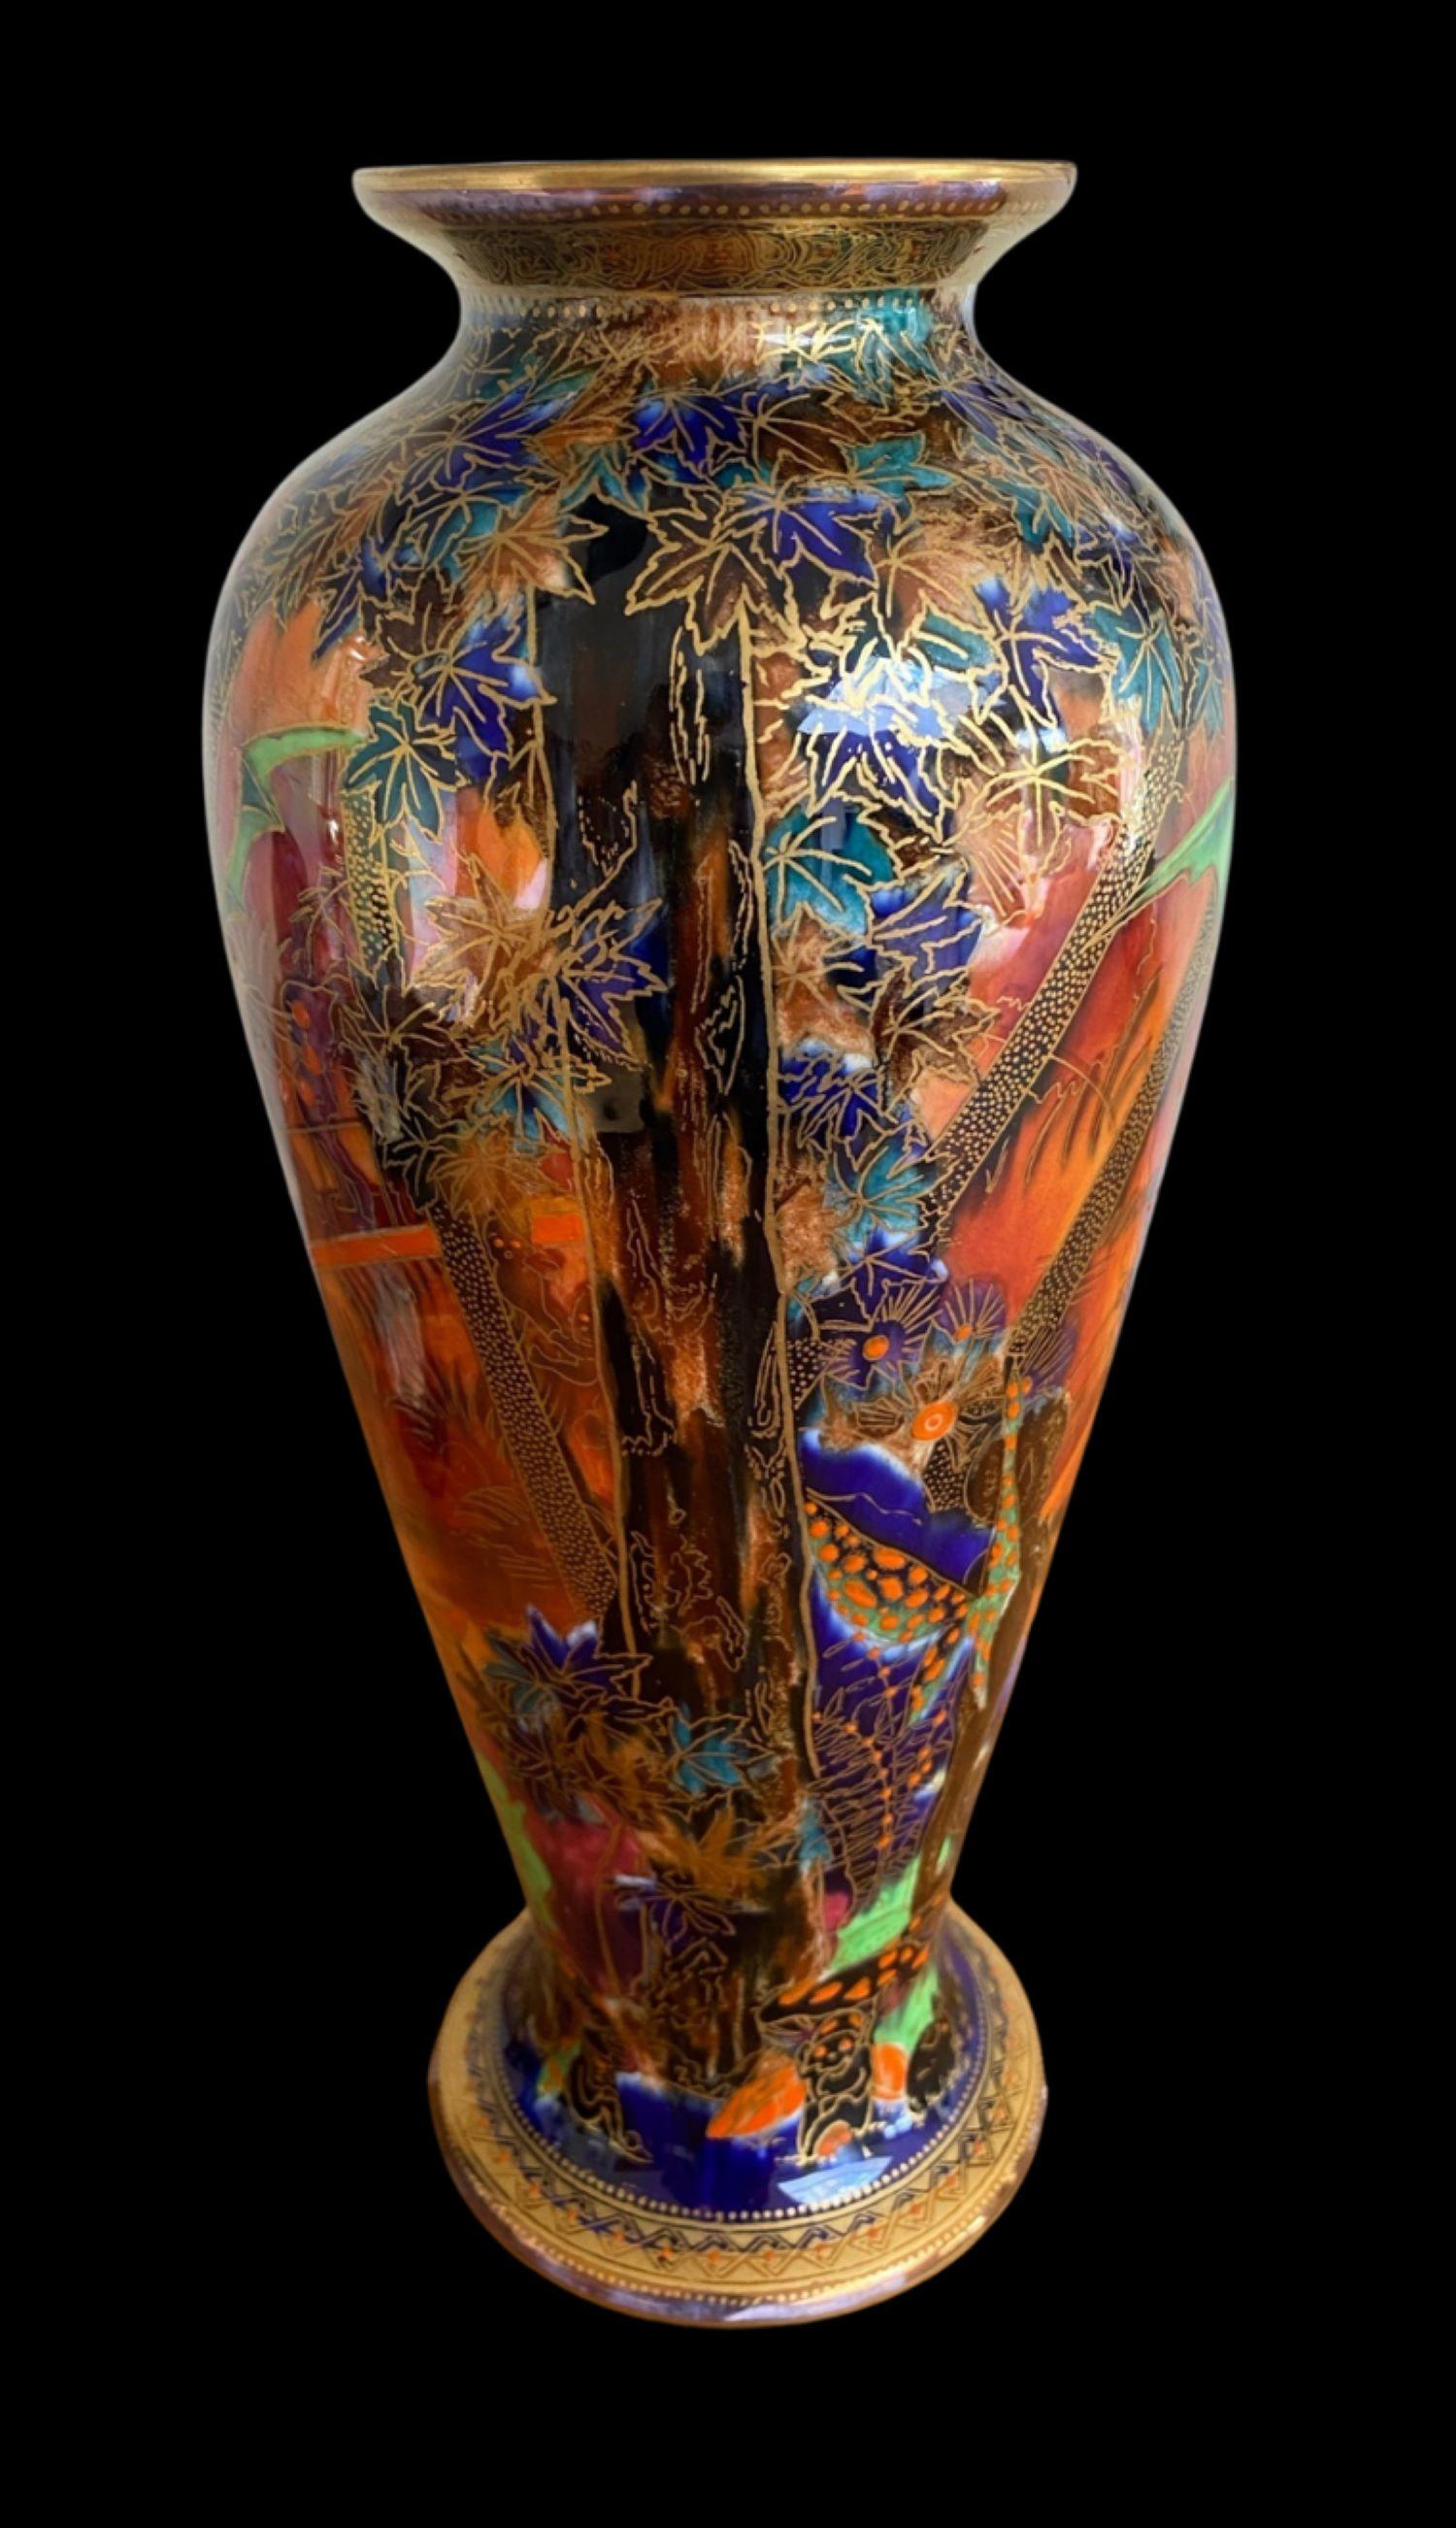 lustre vases for sale